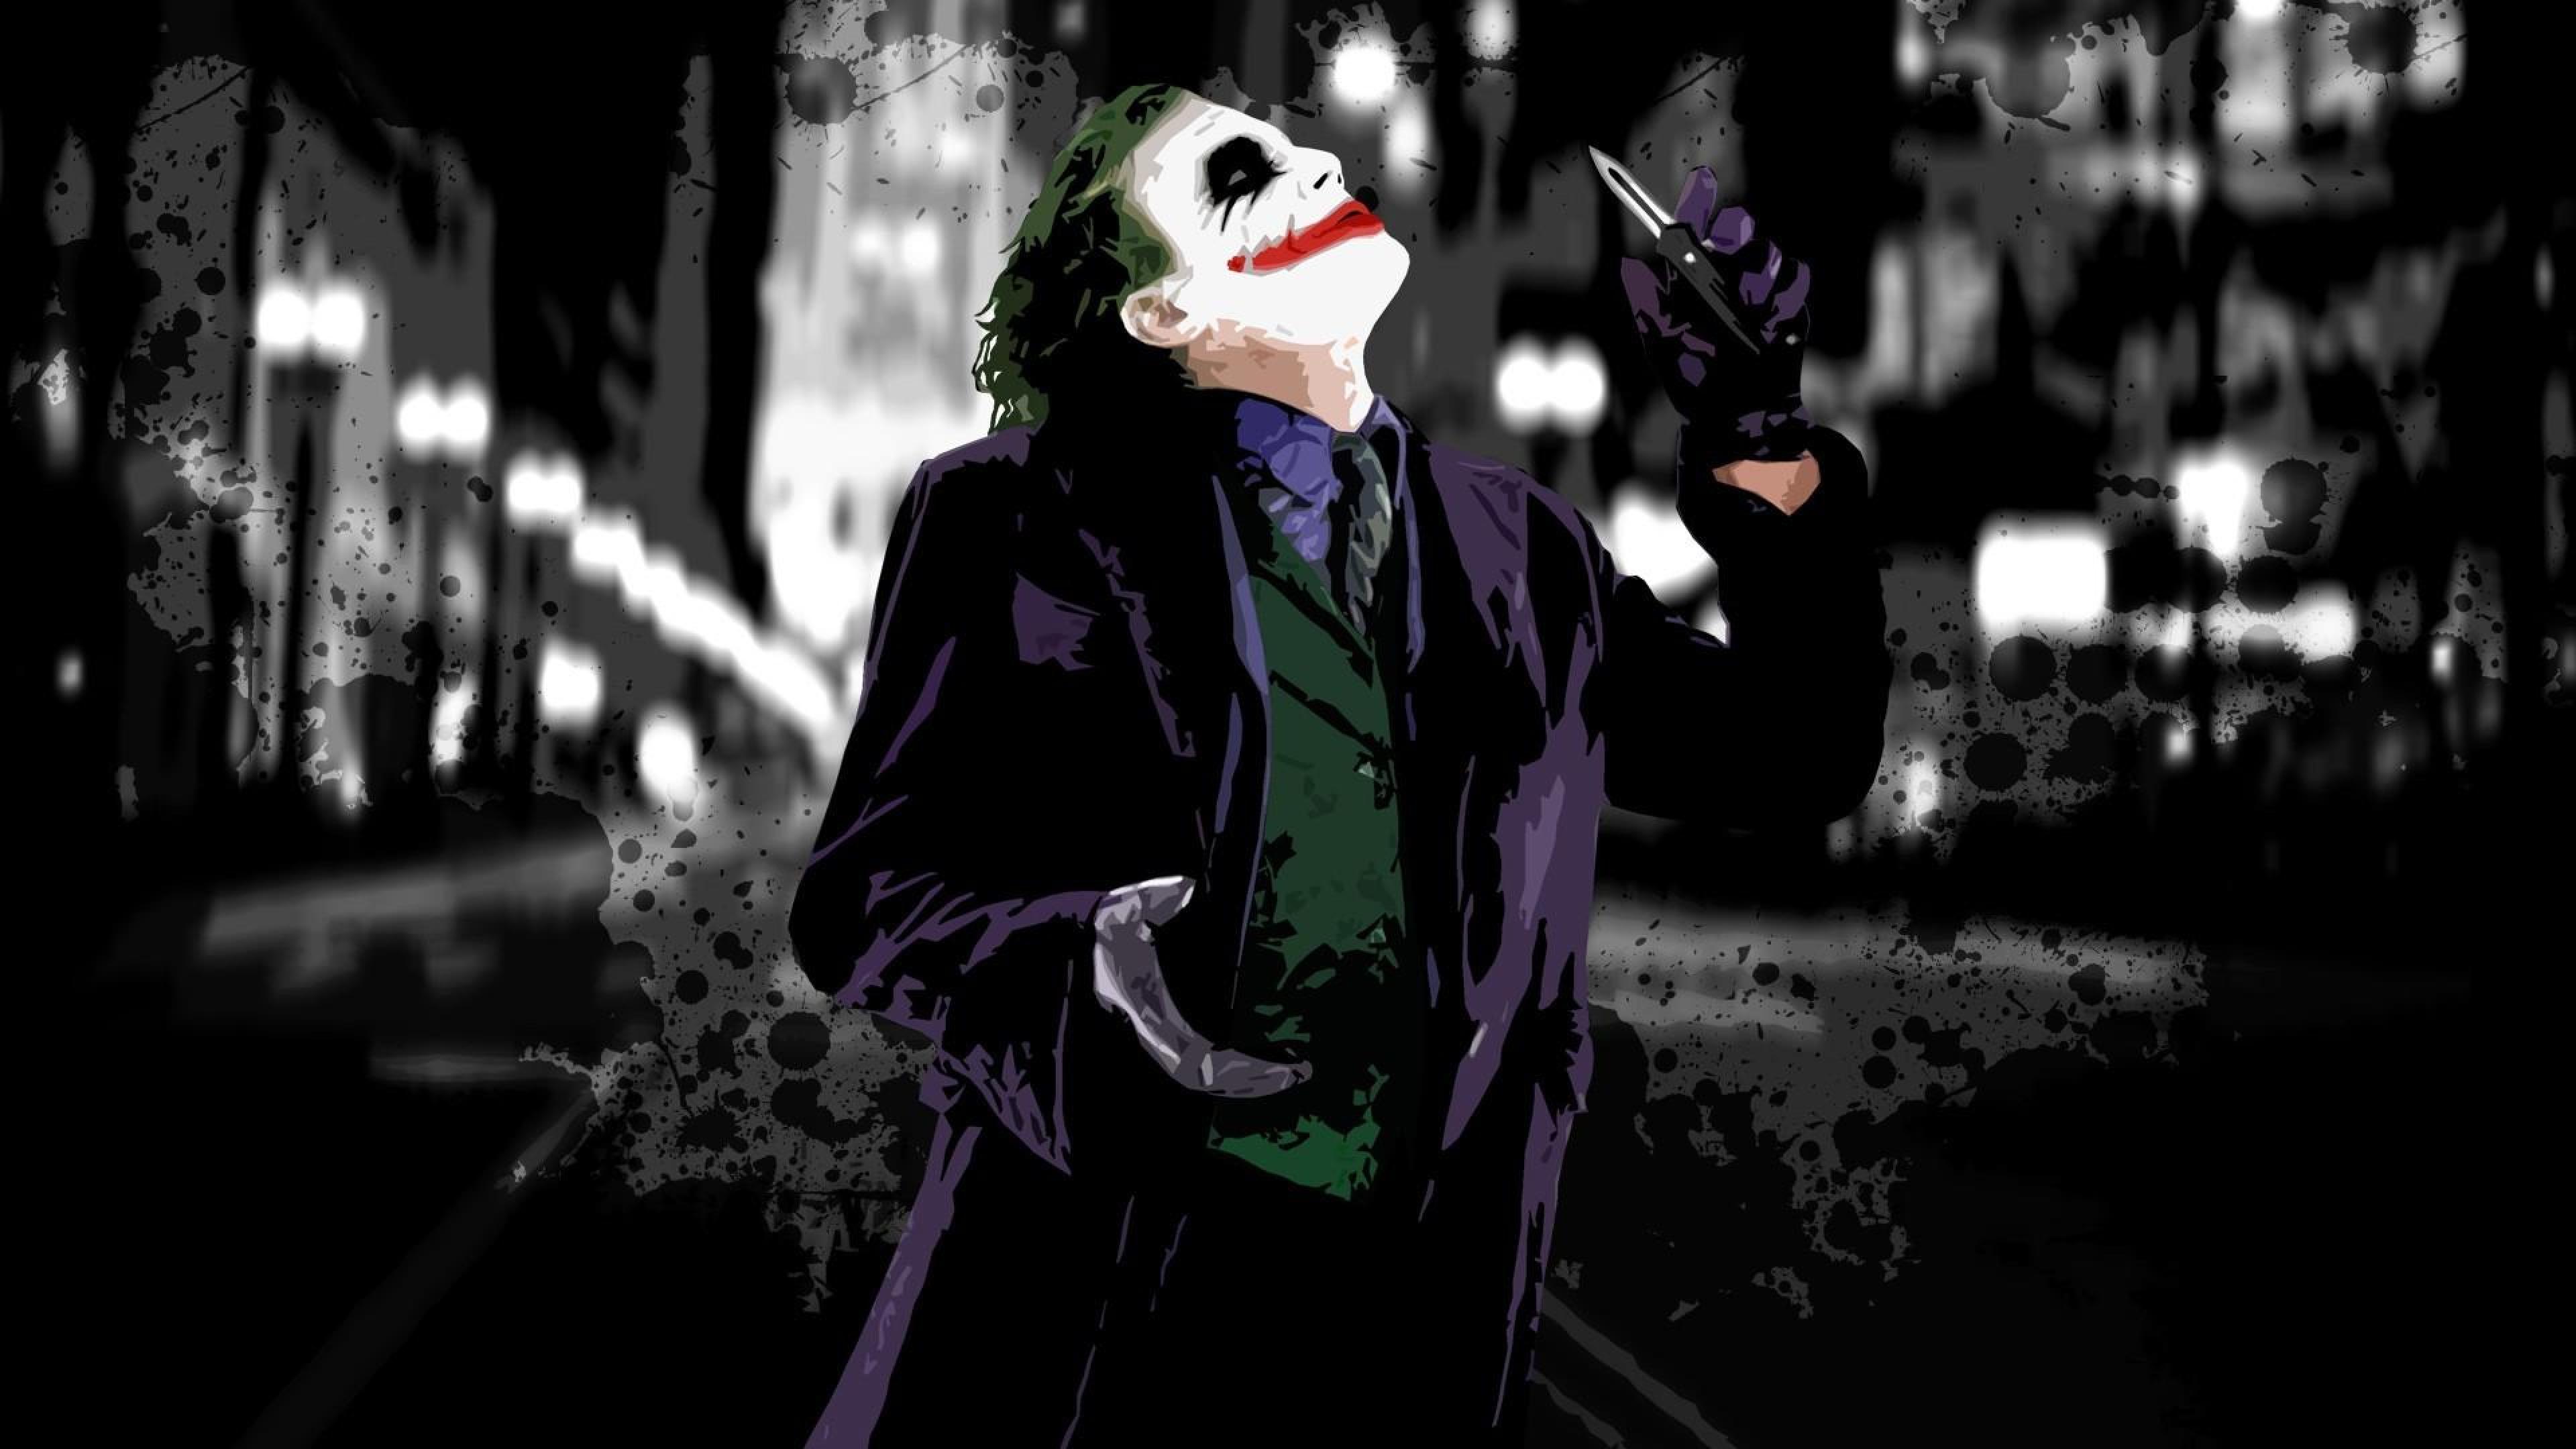 Dark Knight Joker Wallpaper Widescreen Hd Resolution 3840x2160 :  